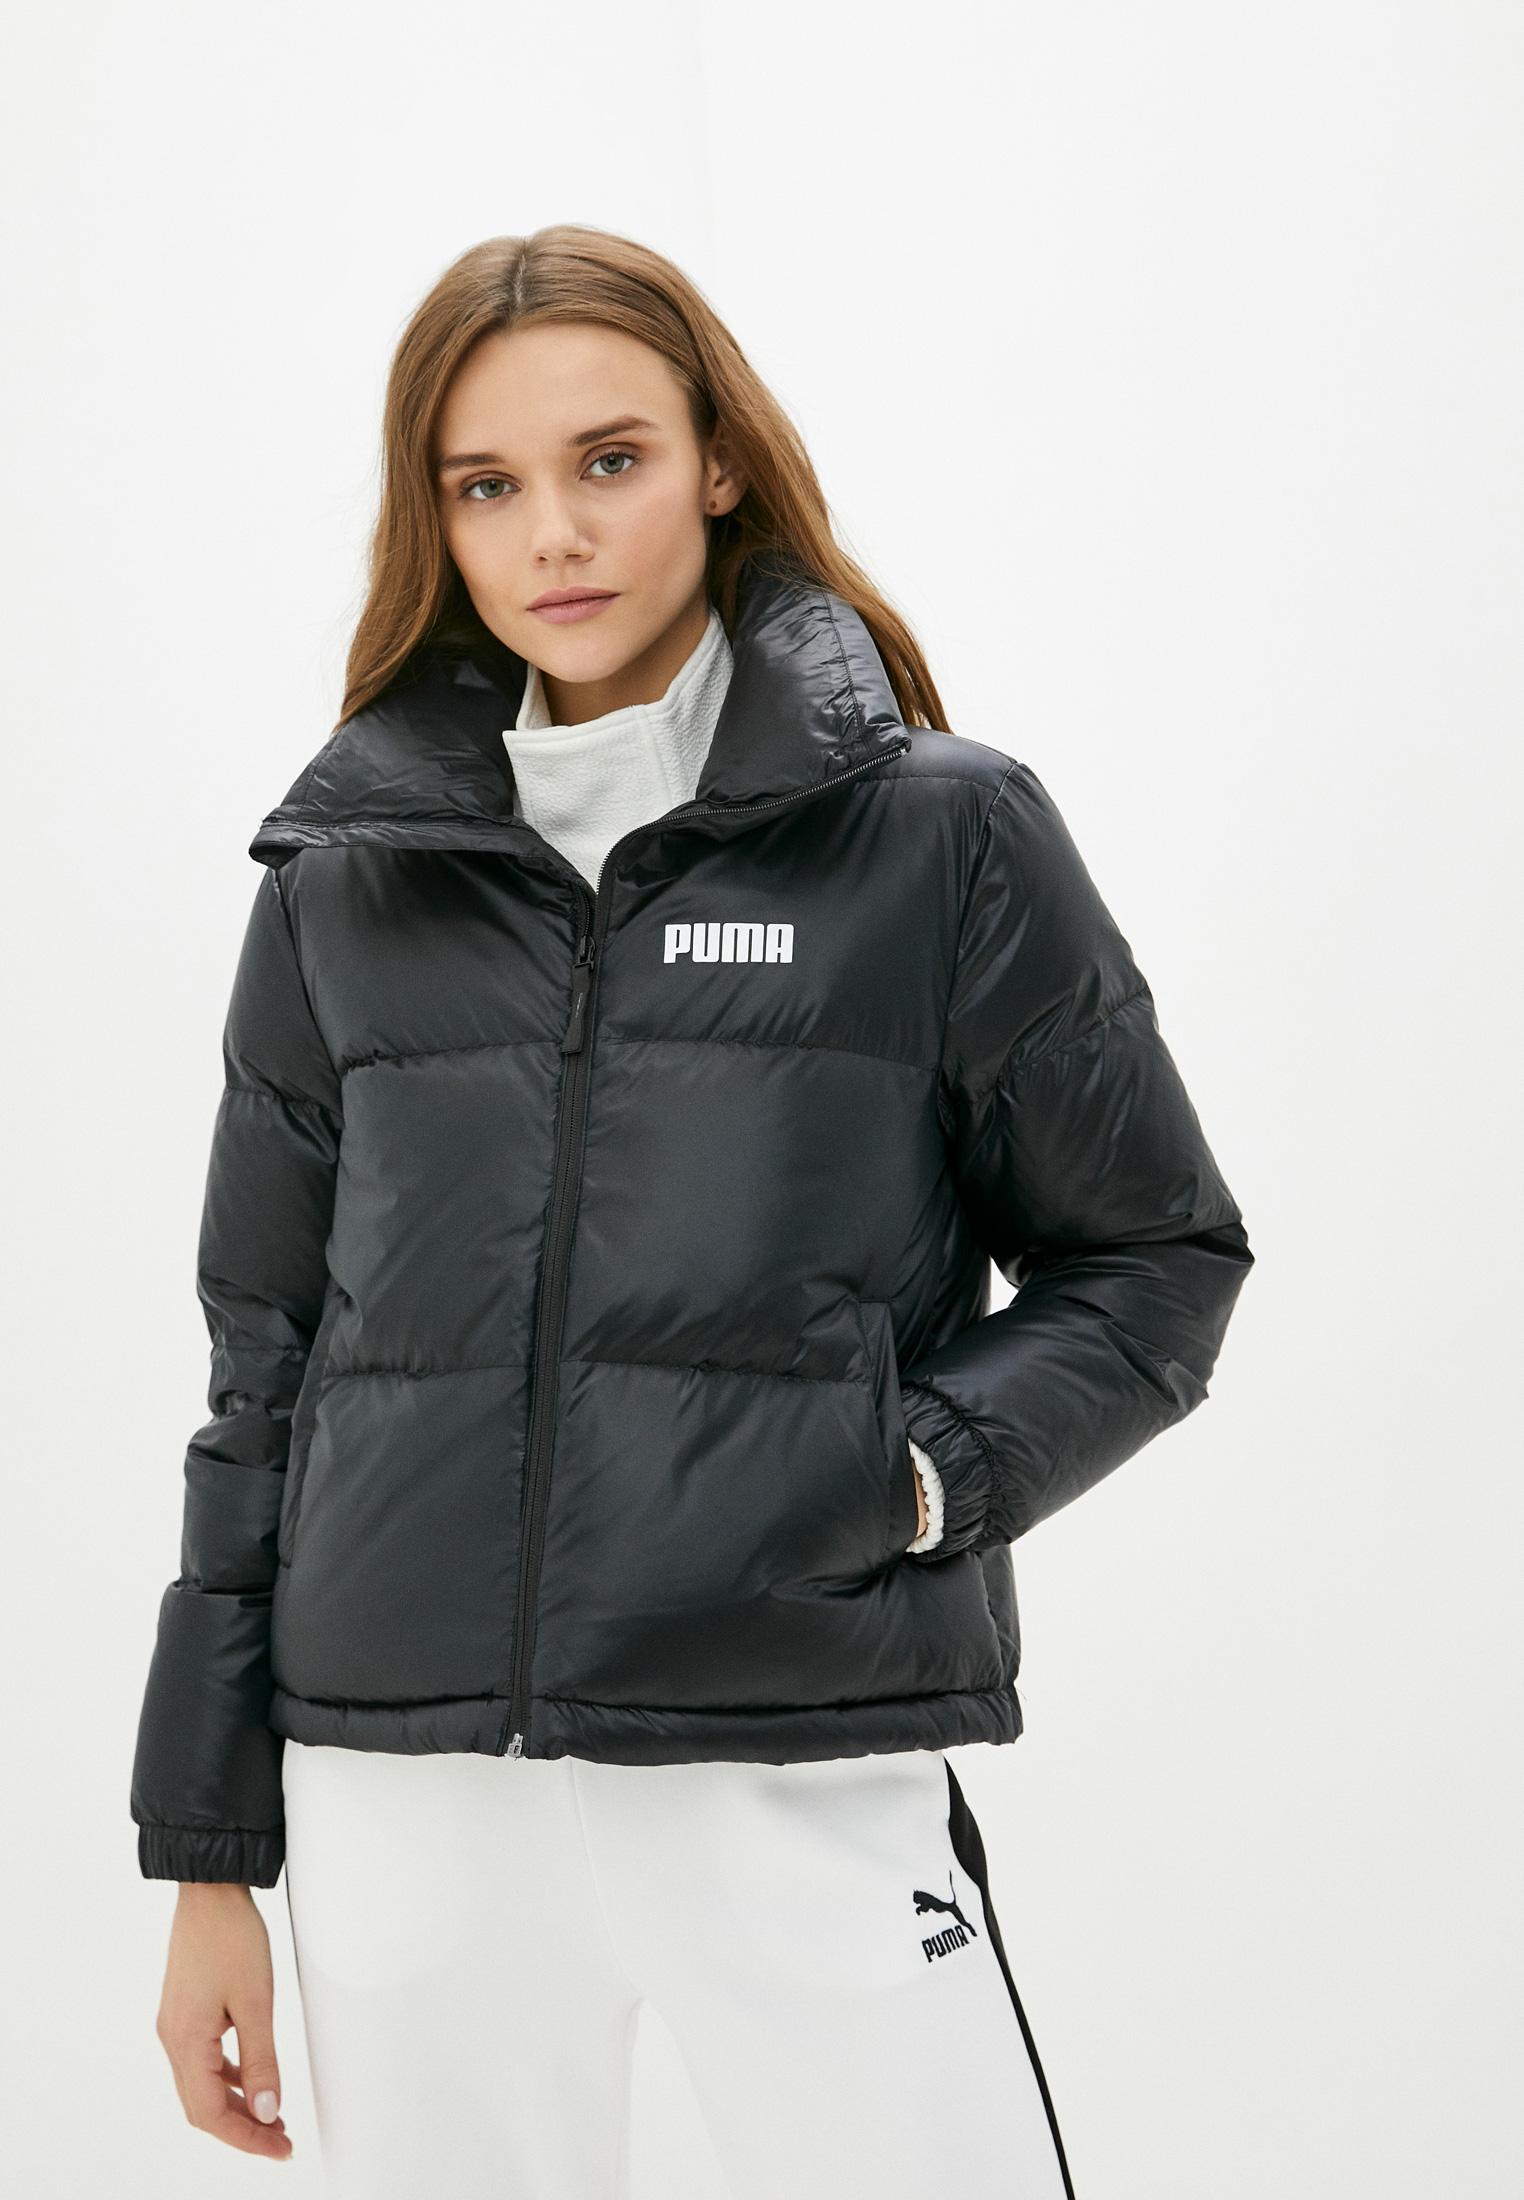 Утепленная куртка женская Puma (Пума) 587724 купить за 13160 руб.